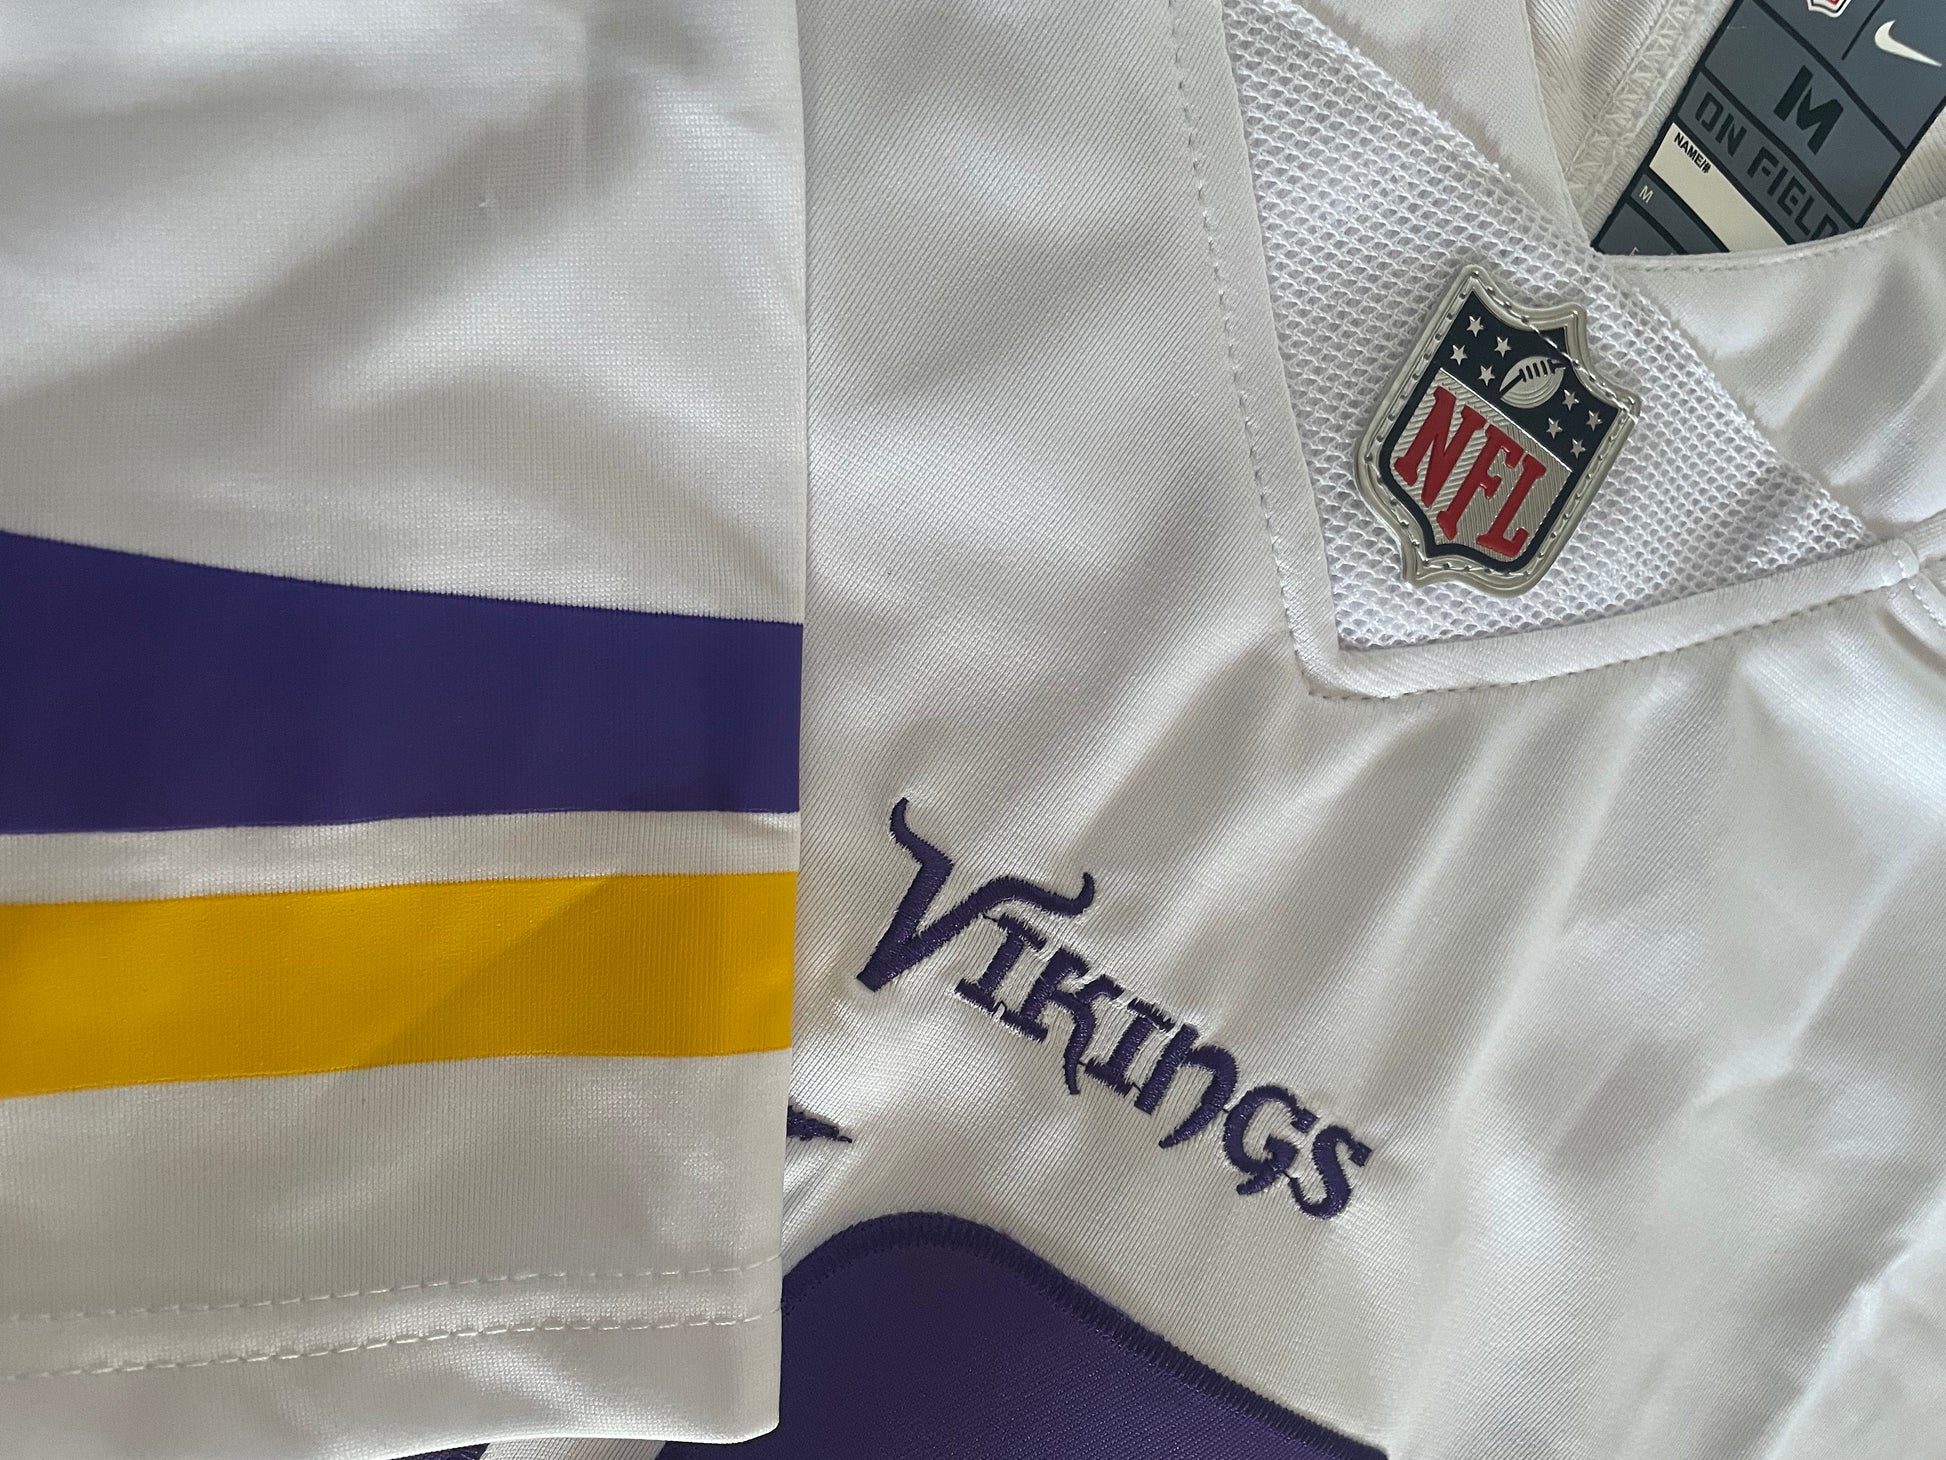 Justin Jefferson Minnesota Vikings Stitched Limited Away Jersey